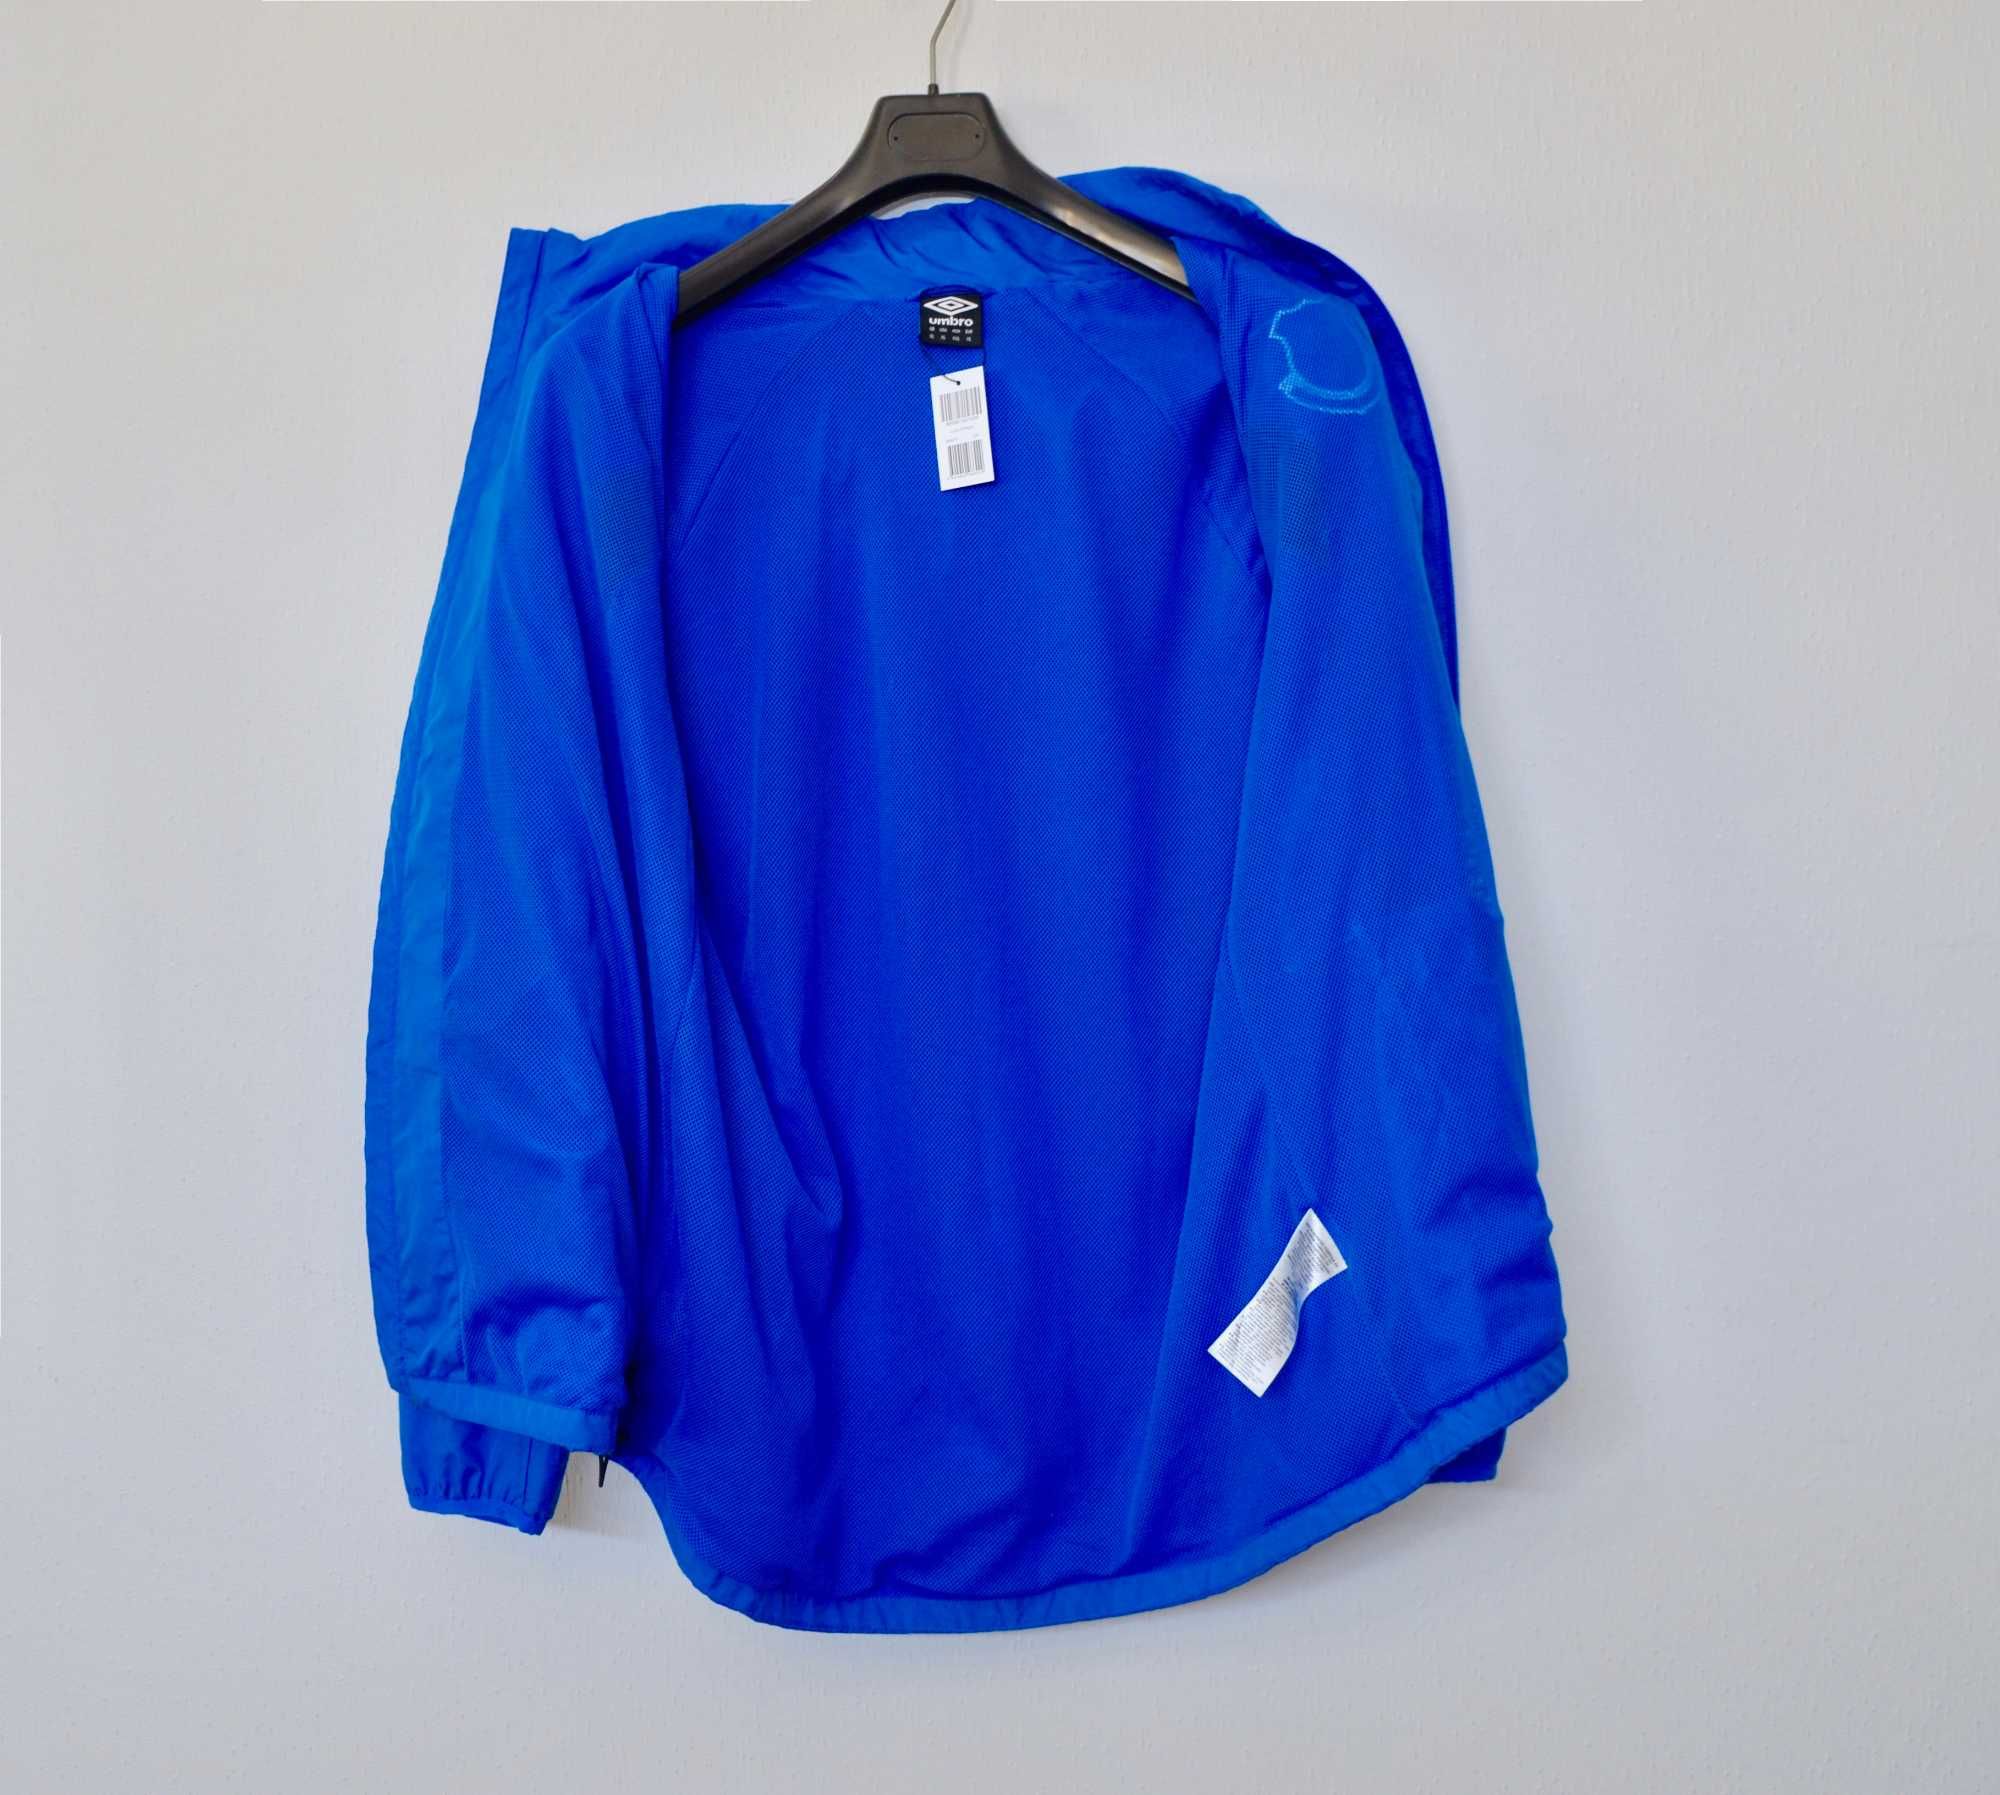 Куртка, ветровка Umbro sport Everton оригинал XXL